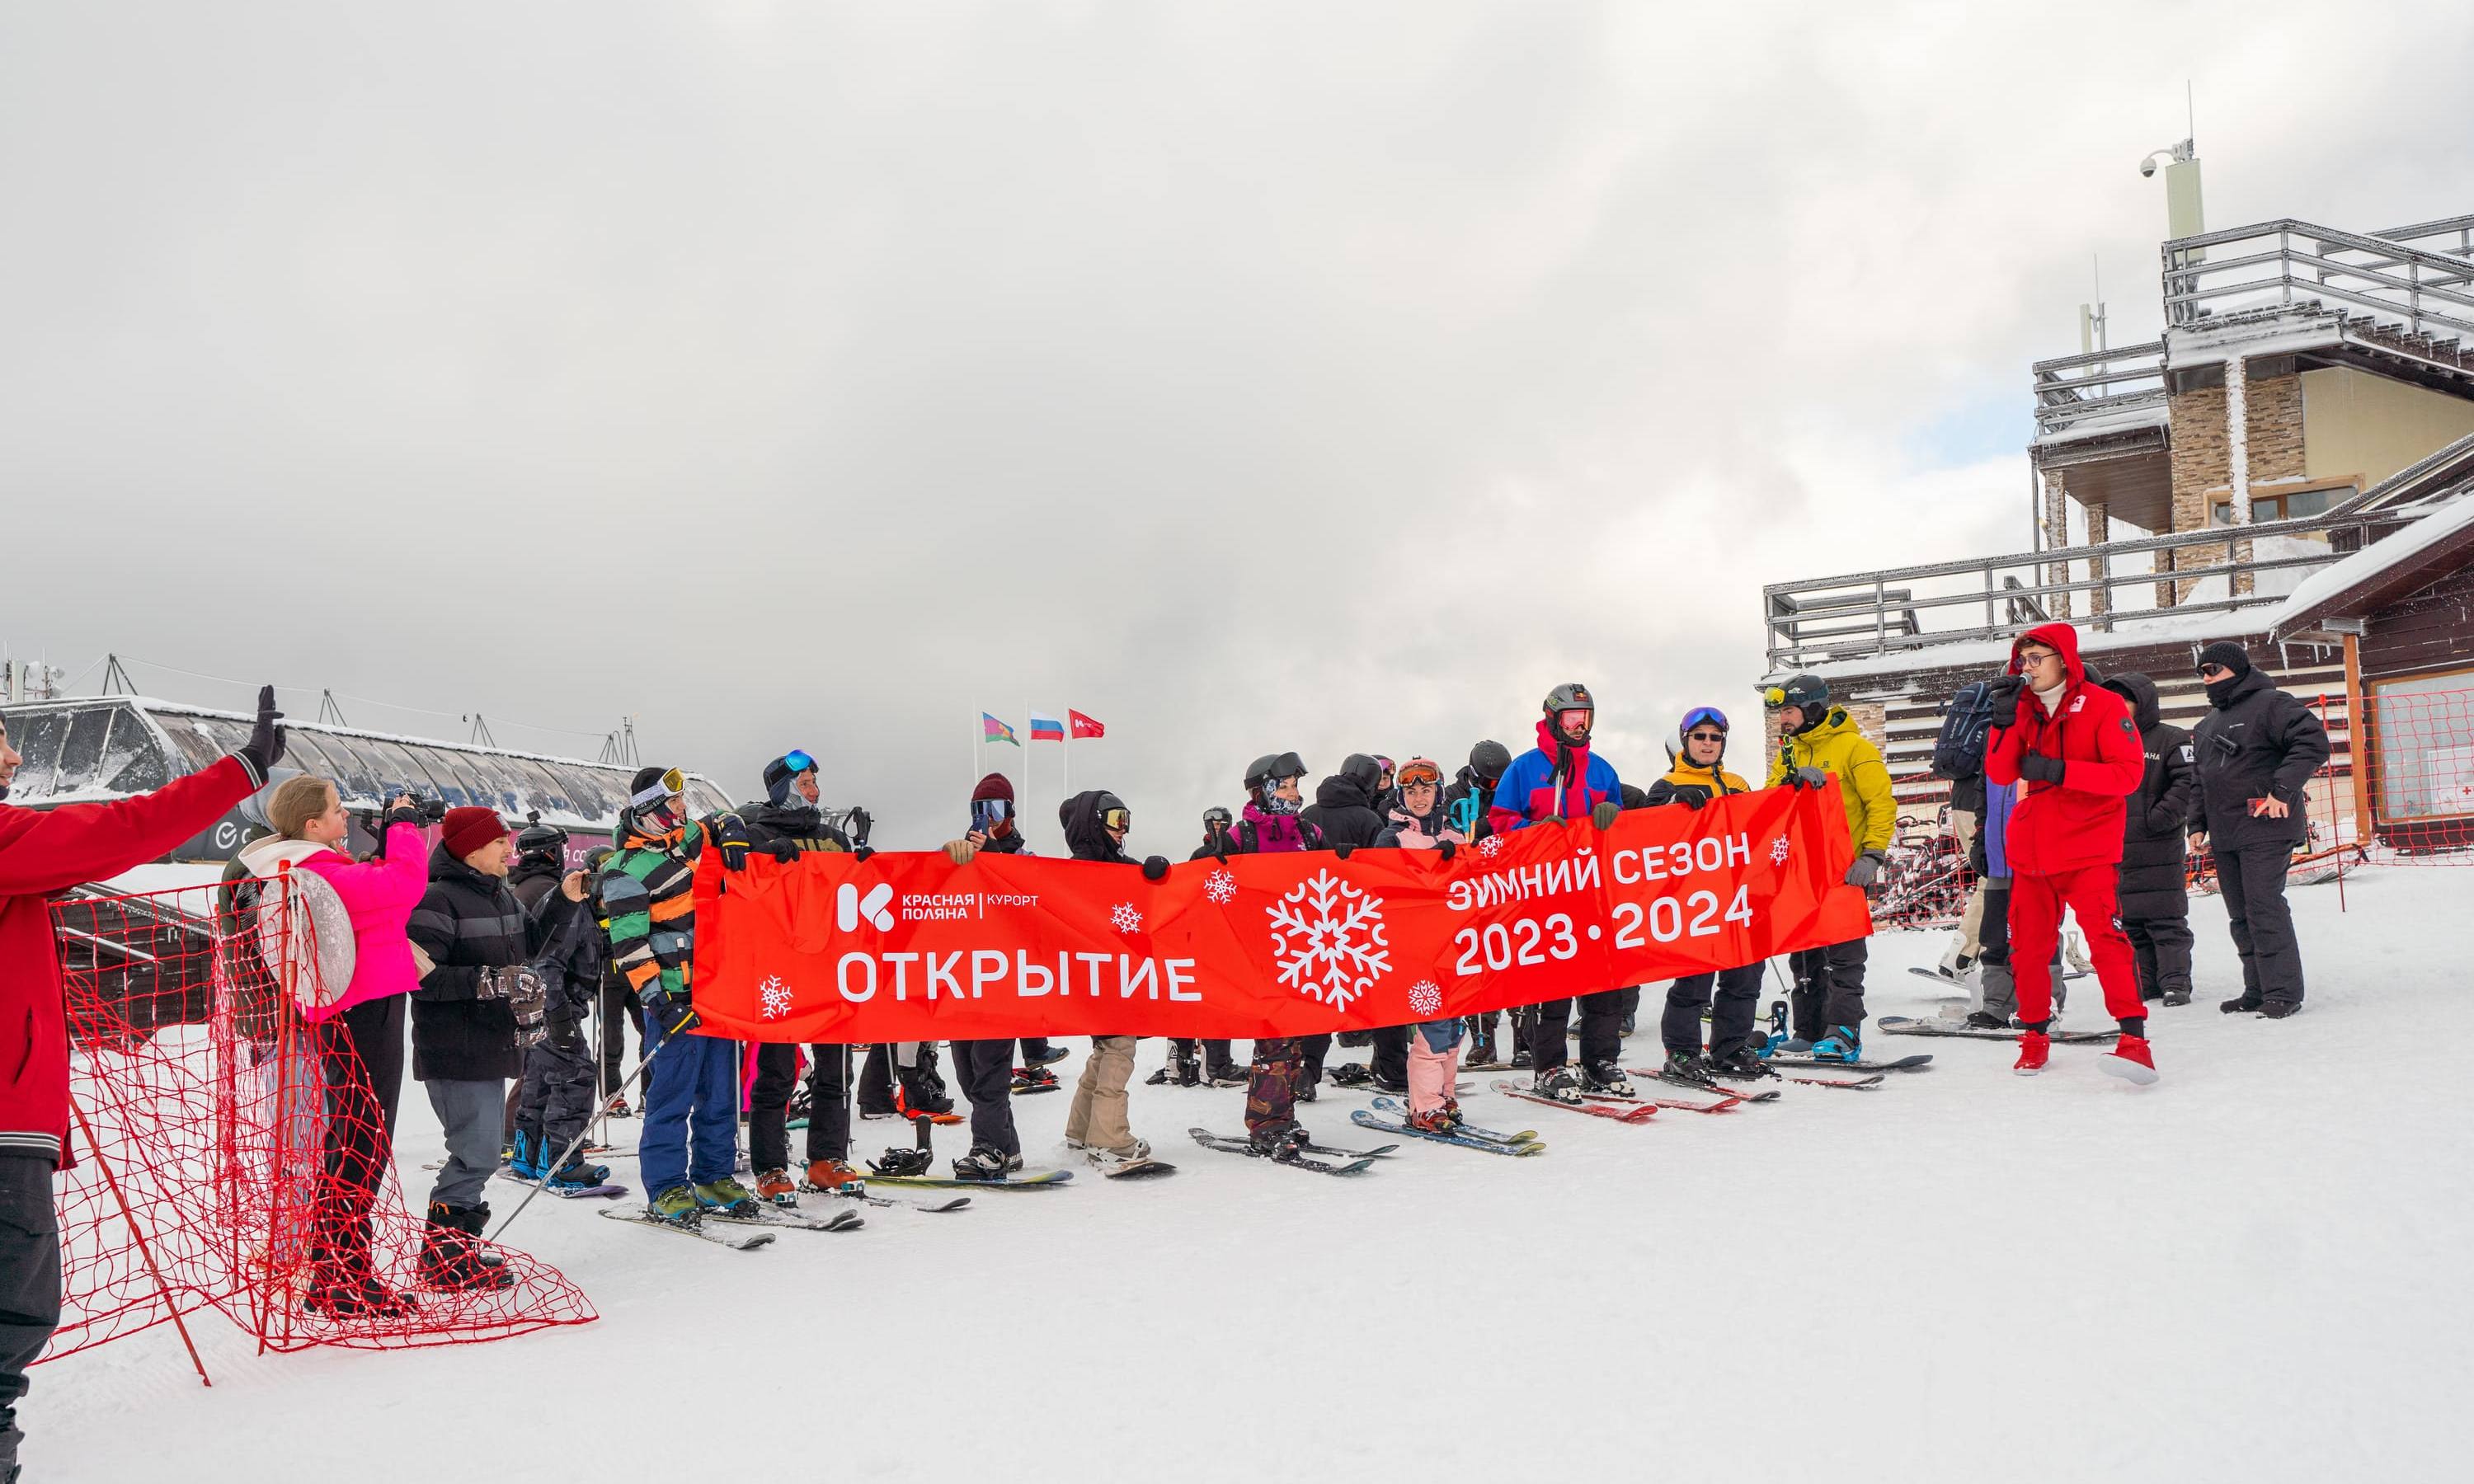 Курорт Красная Поляна открыл горнолыжный сезон 2023/2024